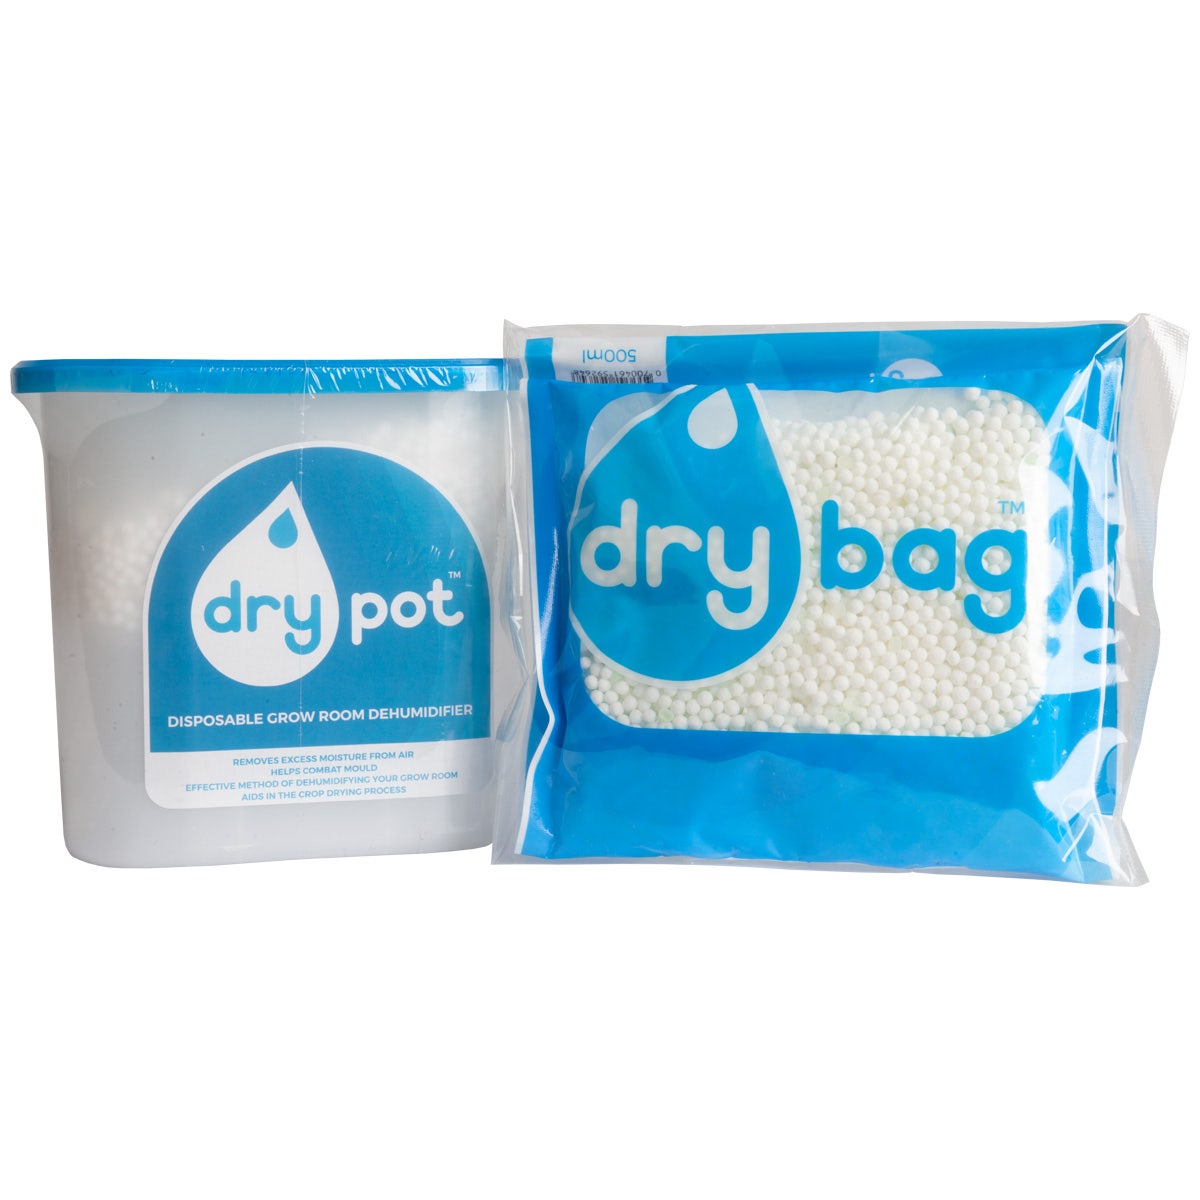 Dry Pot Disposable Dehumidifier